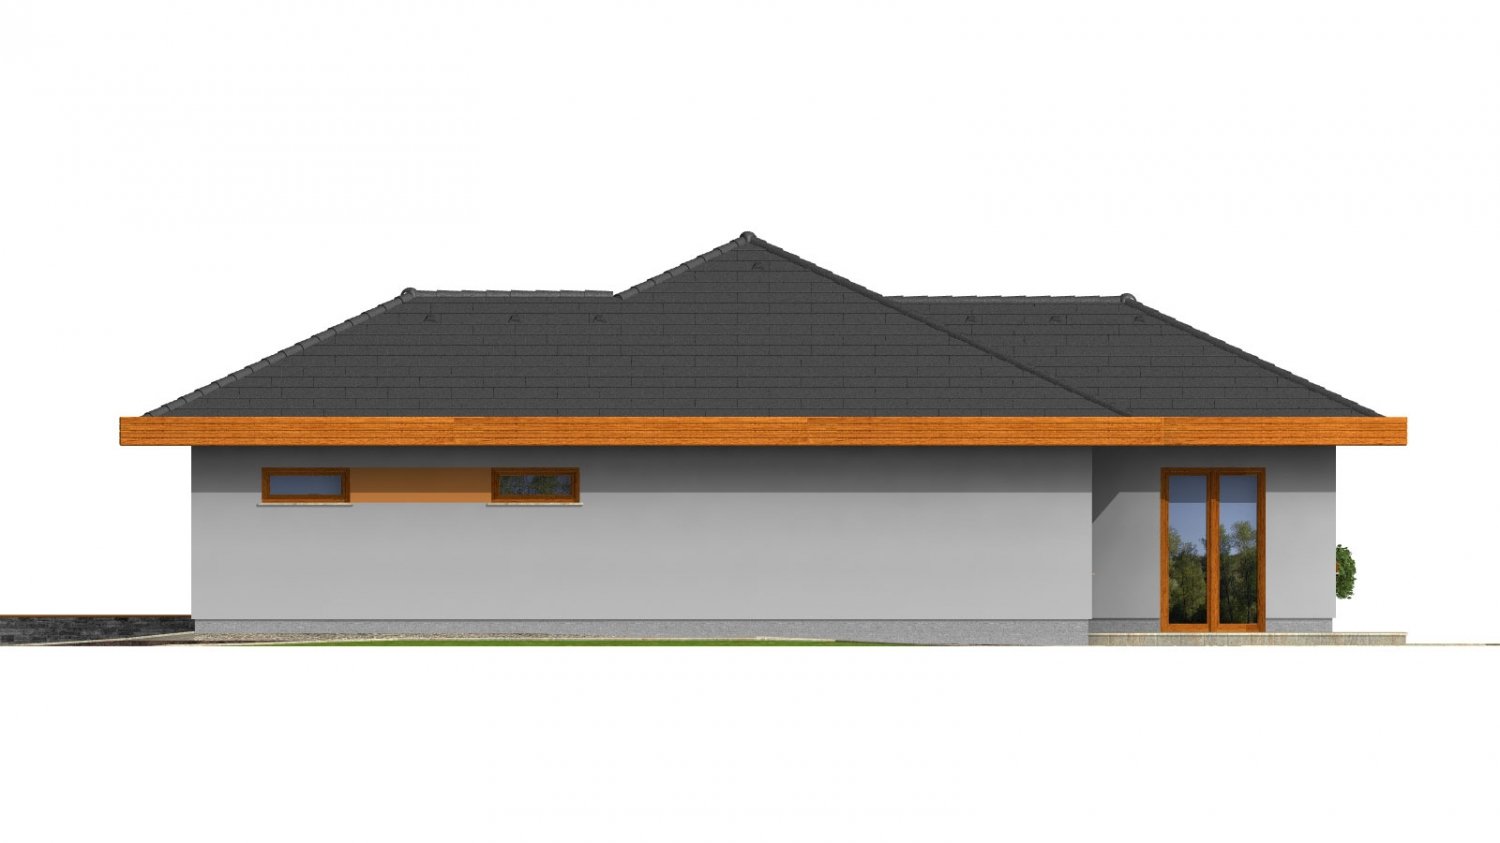 Zrkadlový pohľad 4. - Dům do L s dvojgaráží a valbovou střechou. Možnost realizovat plochou střechu.